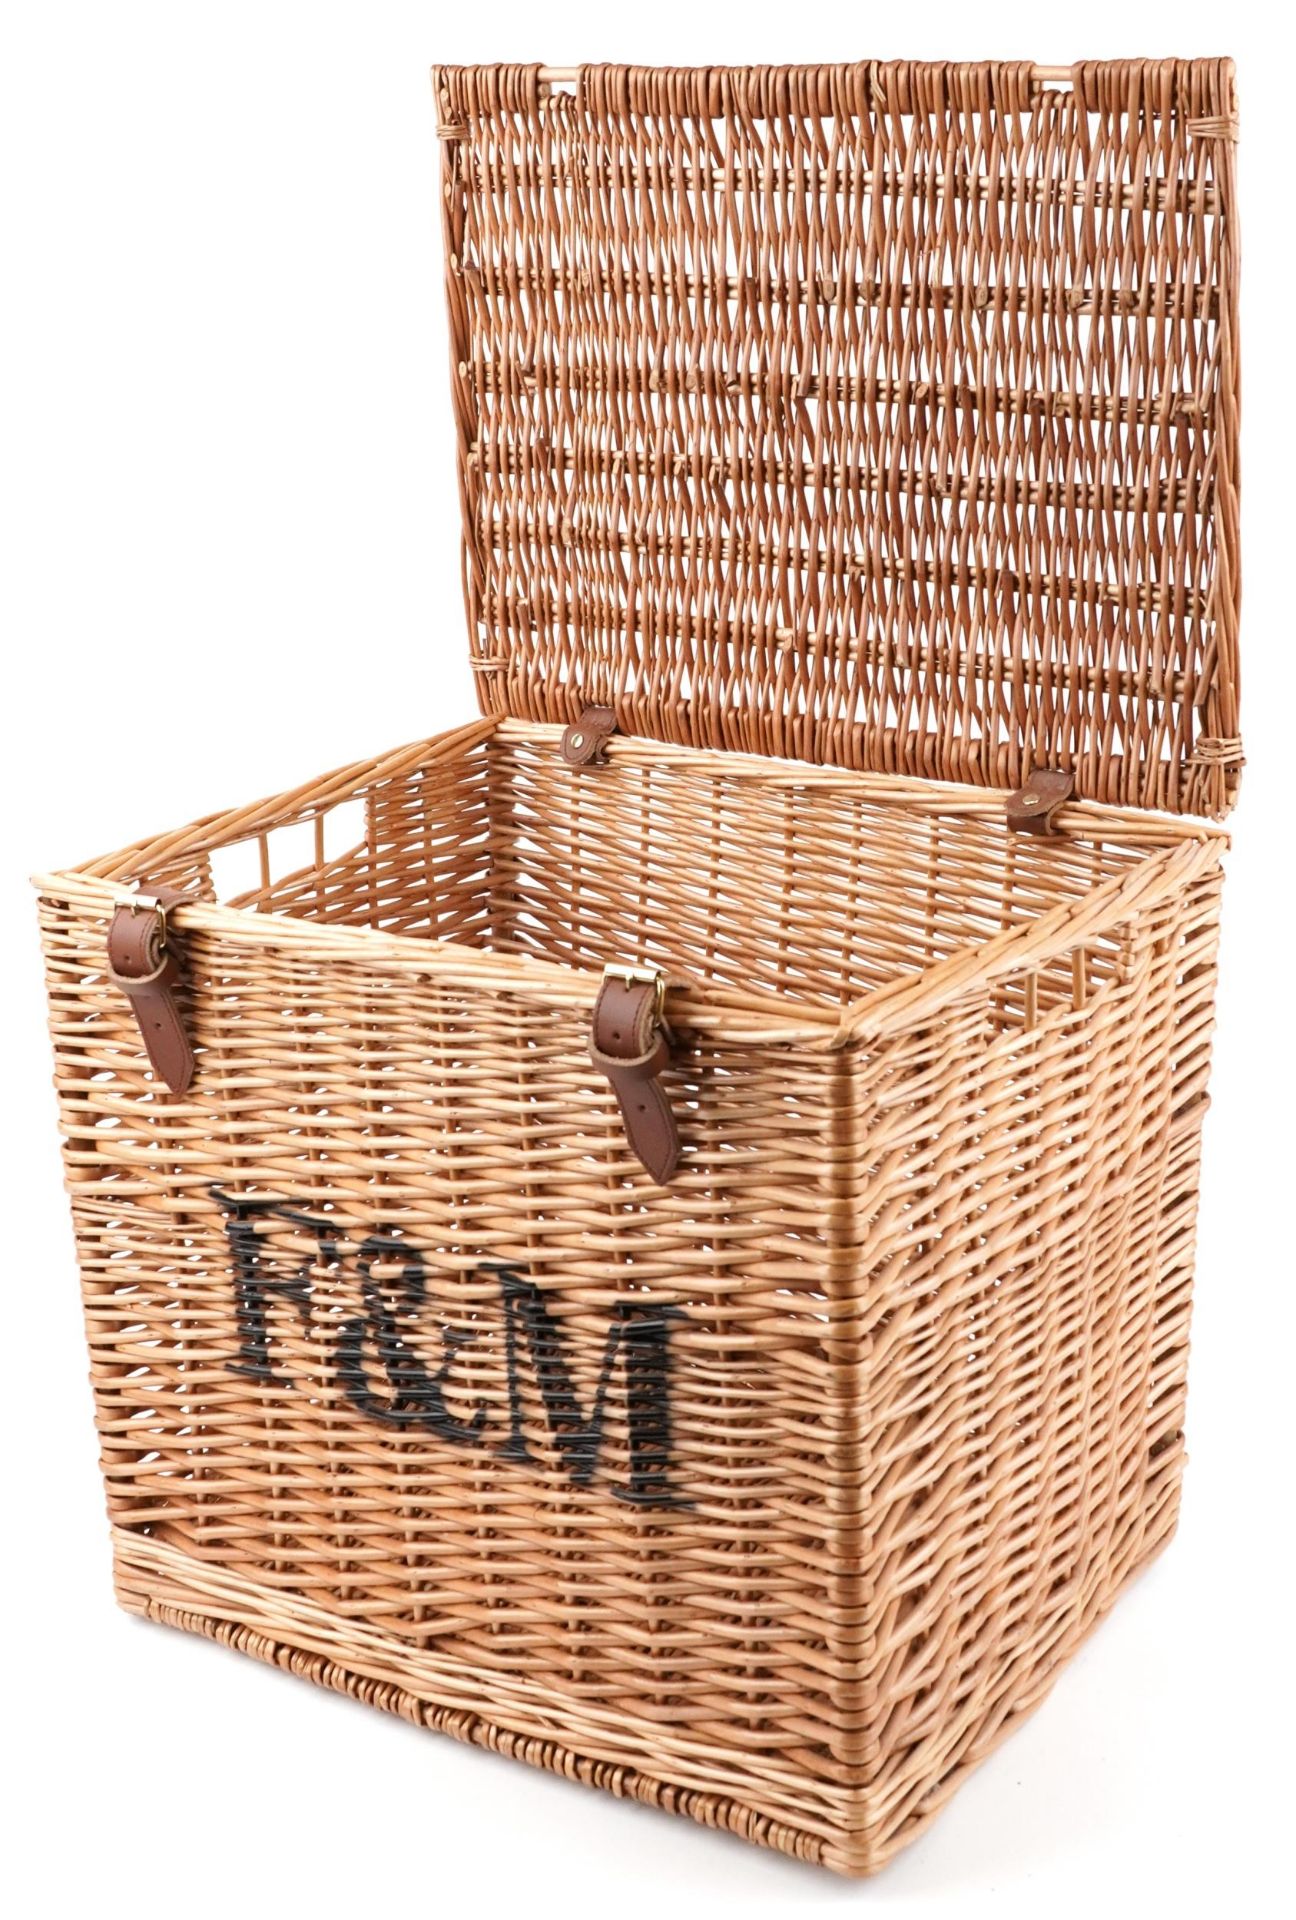 Fortnum & Mason advertising wicker basket, 42.5cm H x 46.5cm W x 37cm D - Bild 2 aus 4